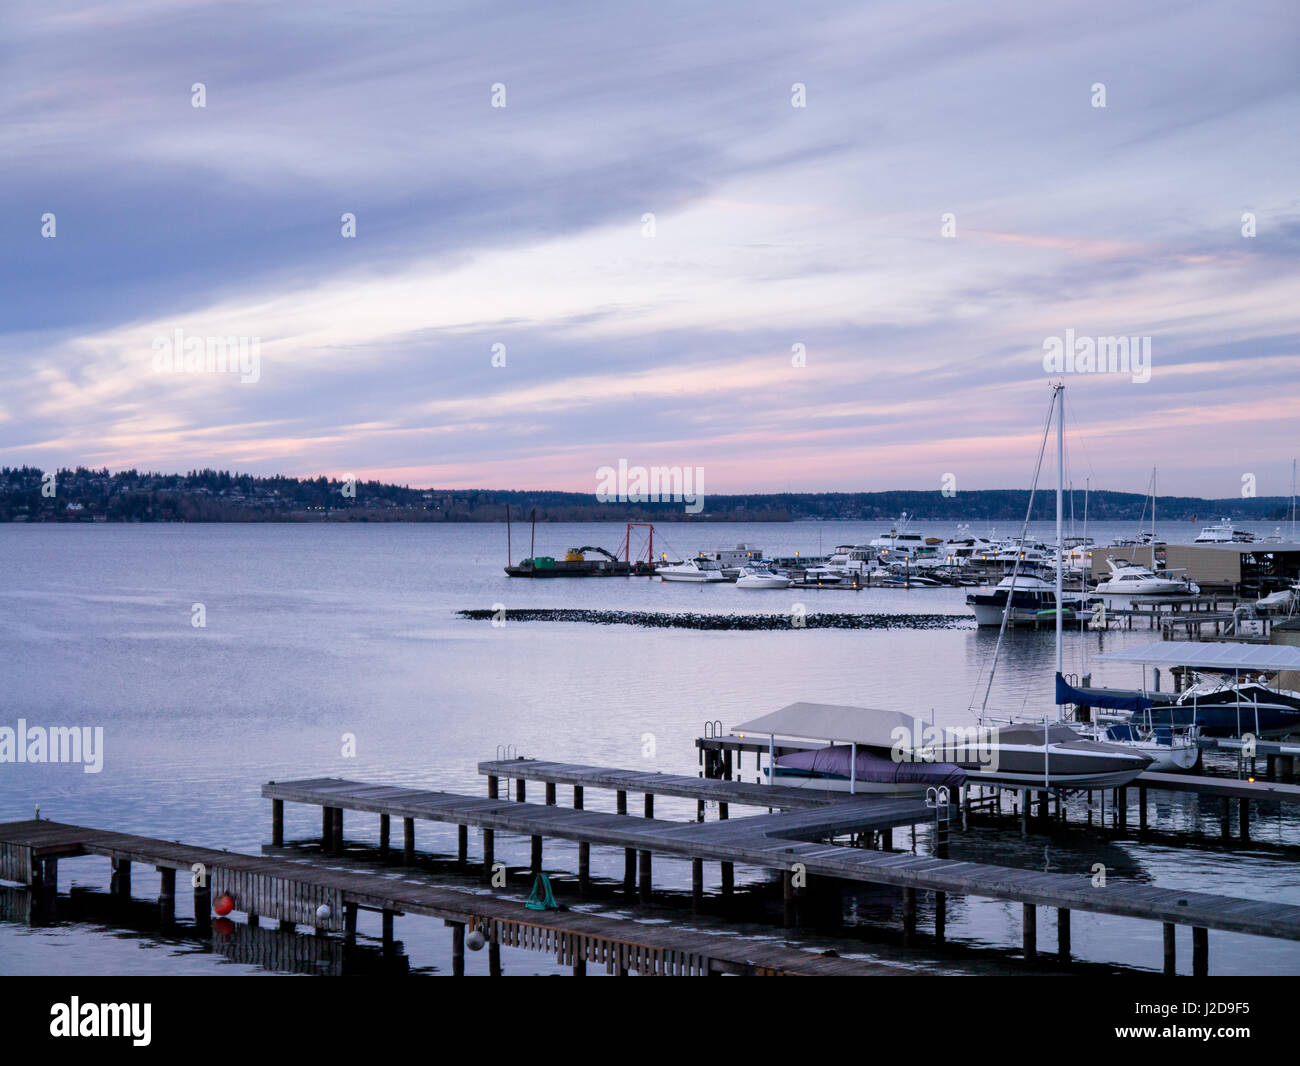 Marina tramonto con dock, barche e folaghe; orientamento orizzontale Foto Stock